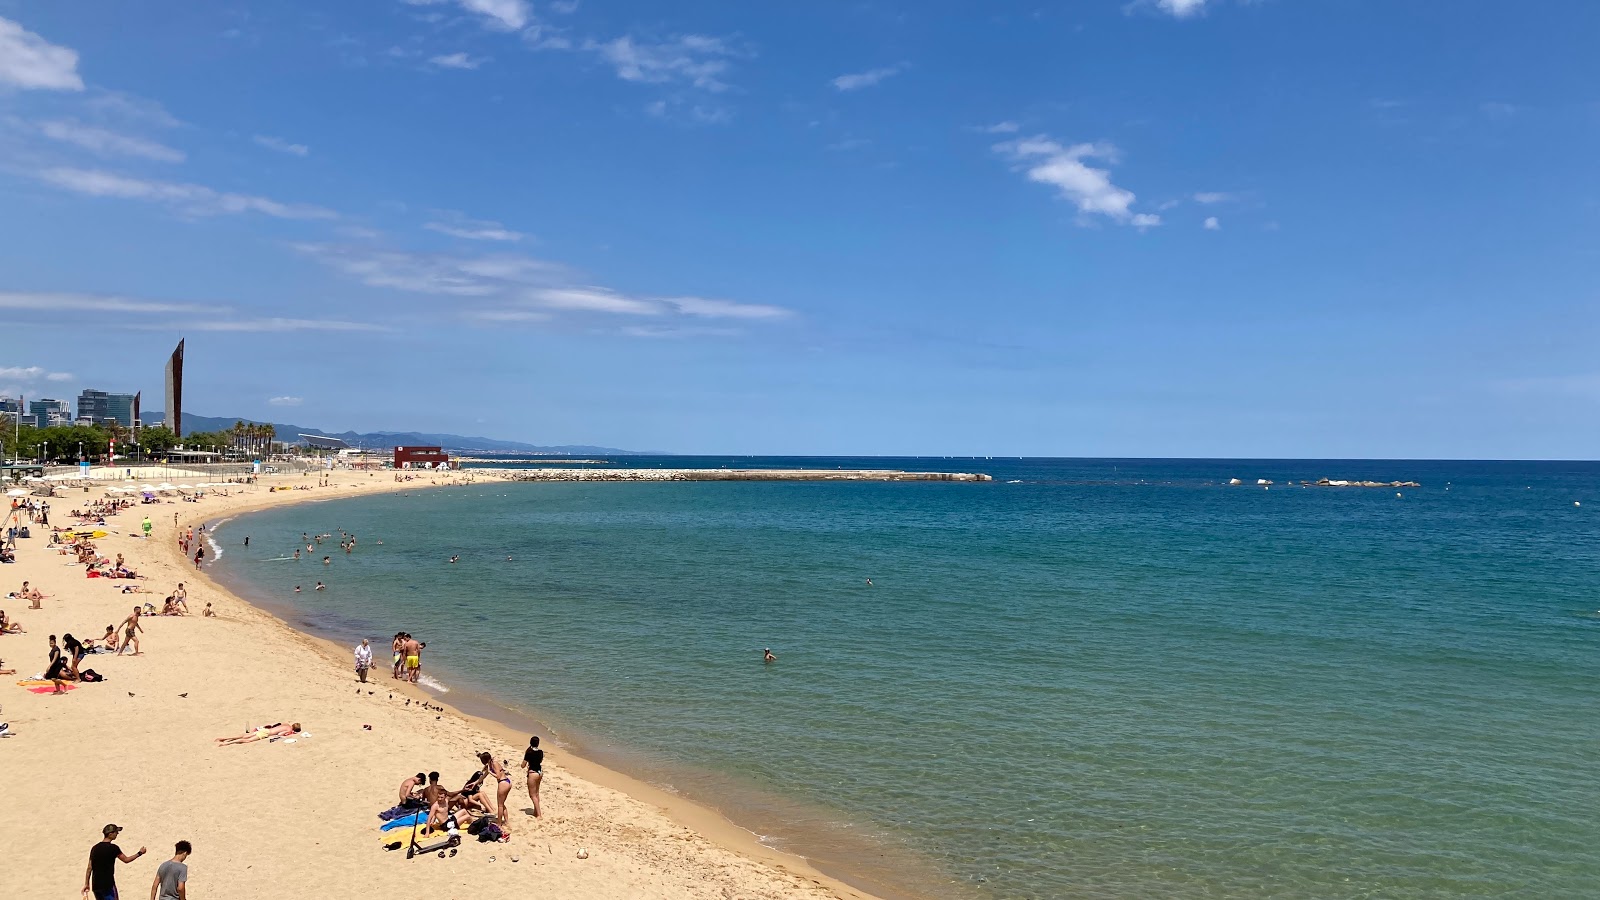 Foto af Playa Barcelona - populært sted blandt afslapningskendere